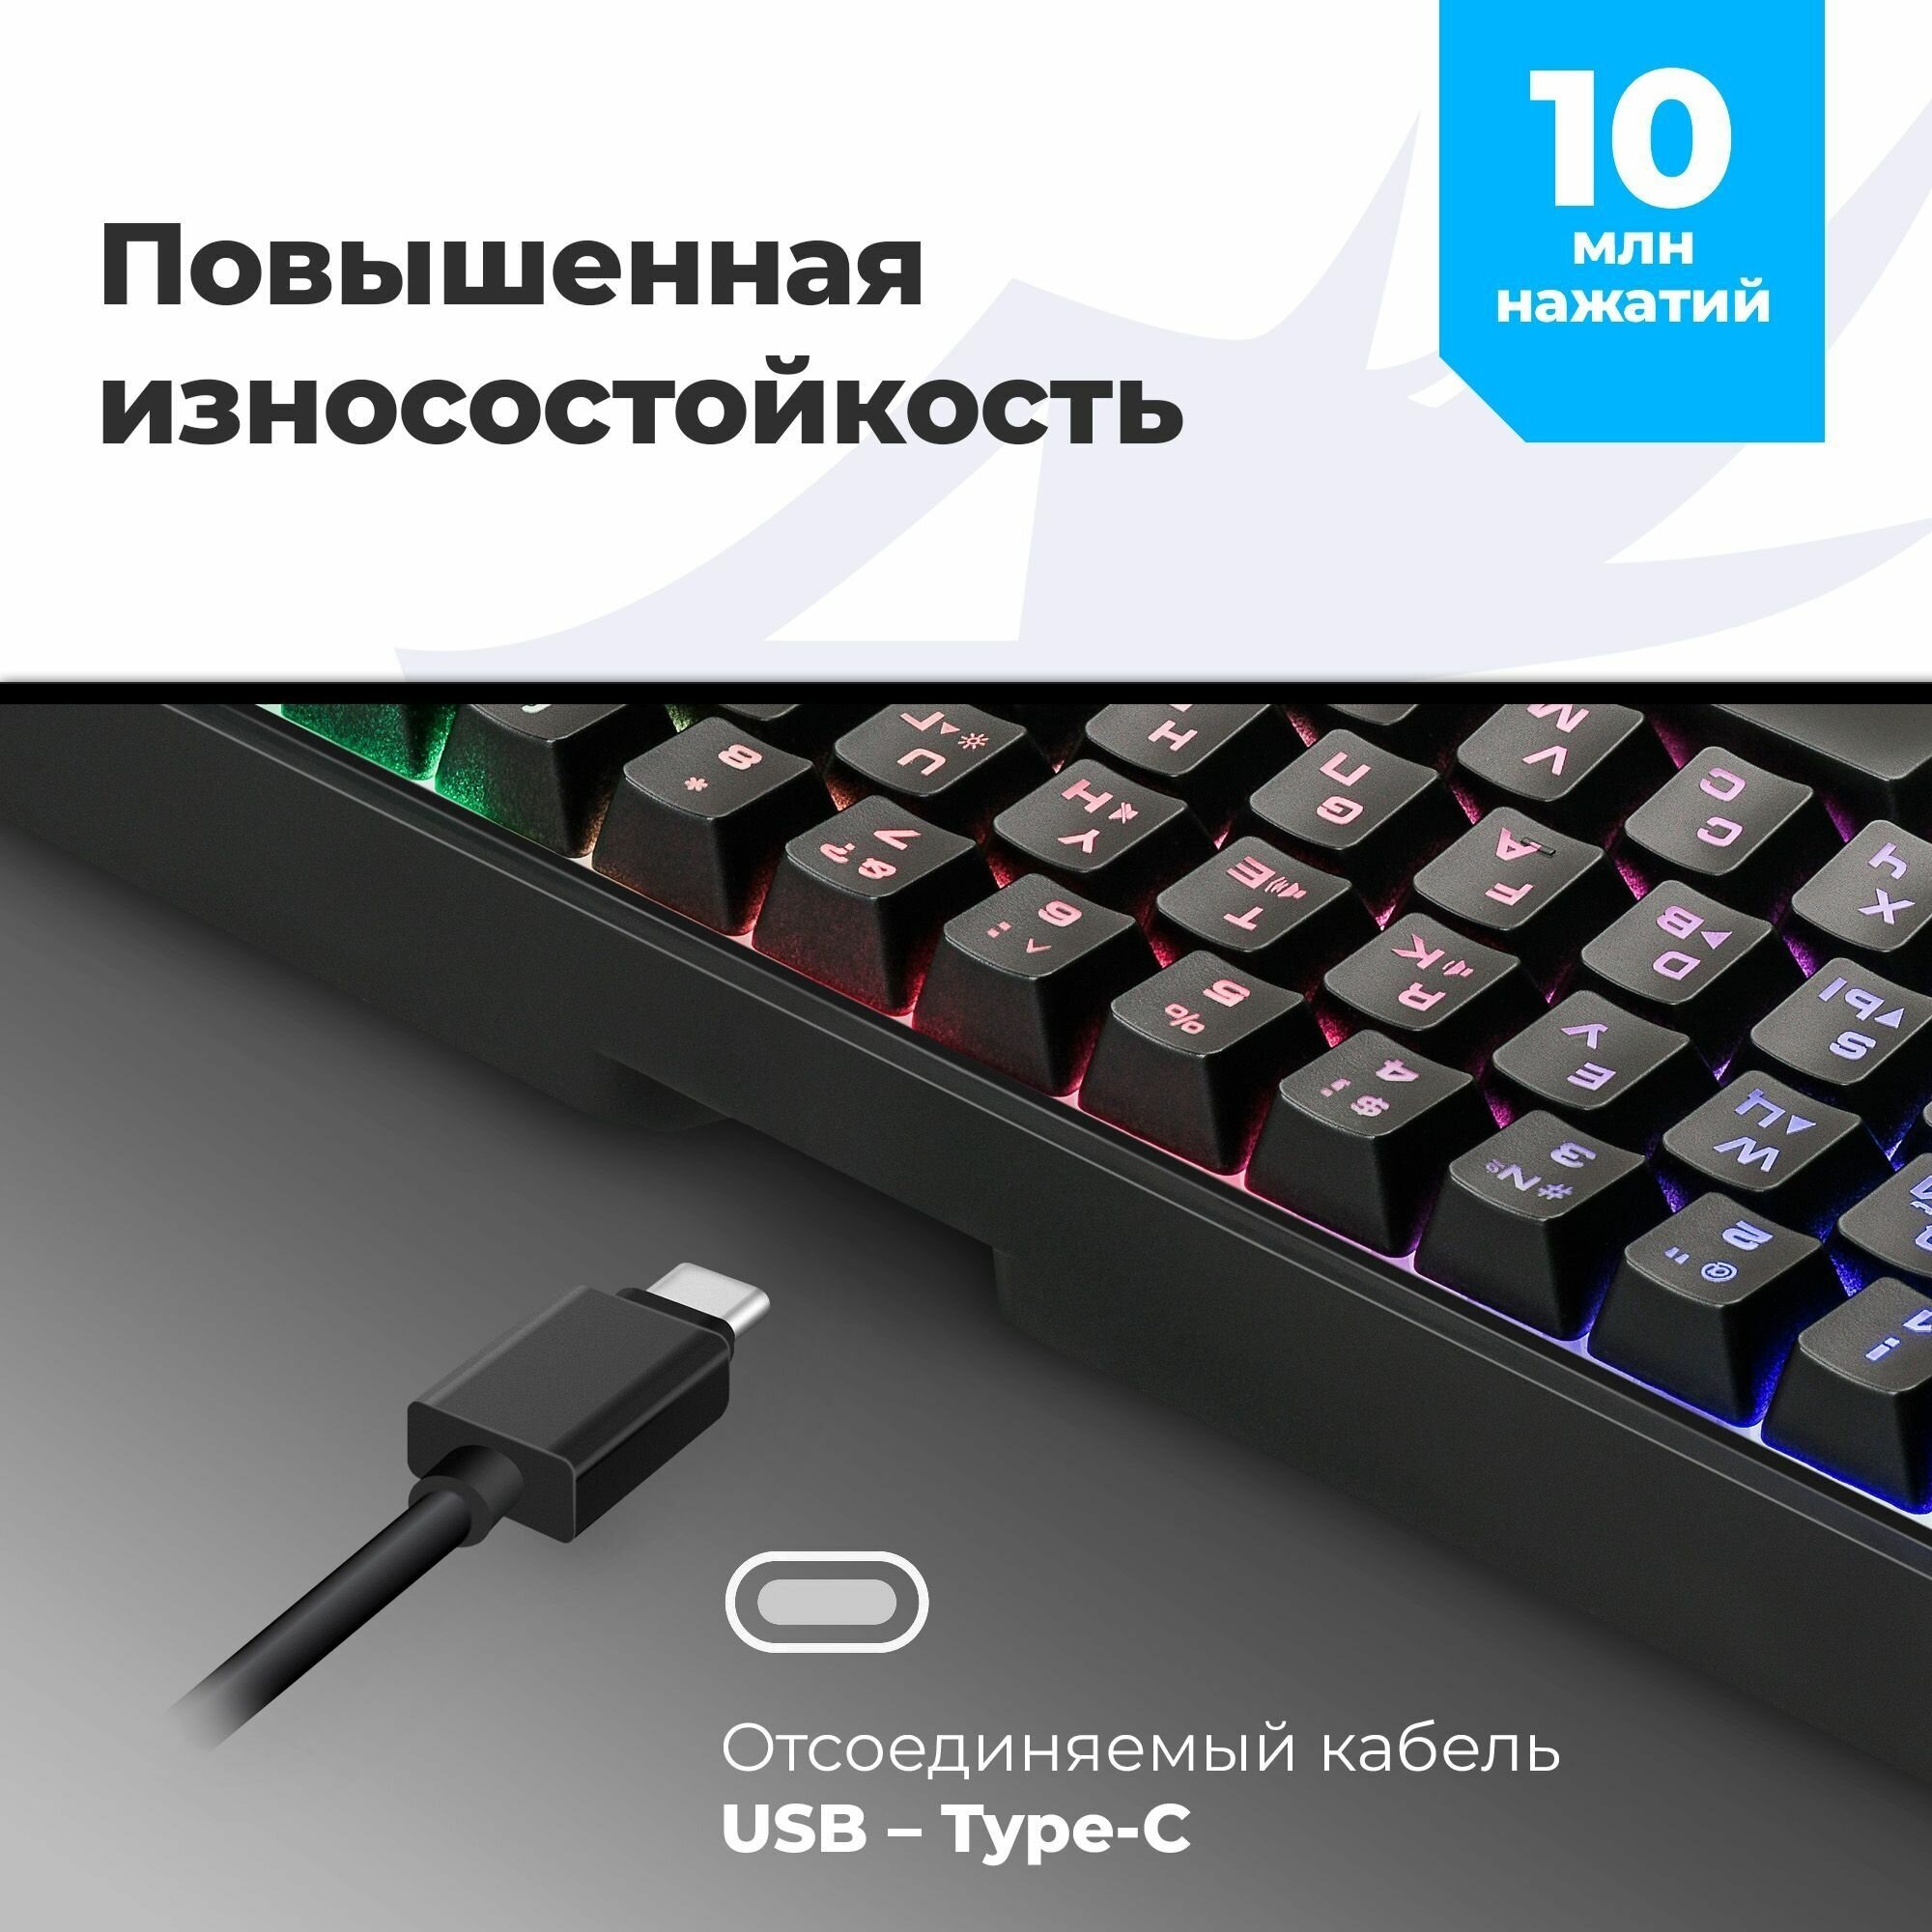 Игровая клавиатура для компьютера Defender Red мембранная (60%)